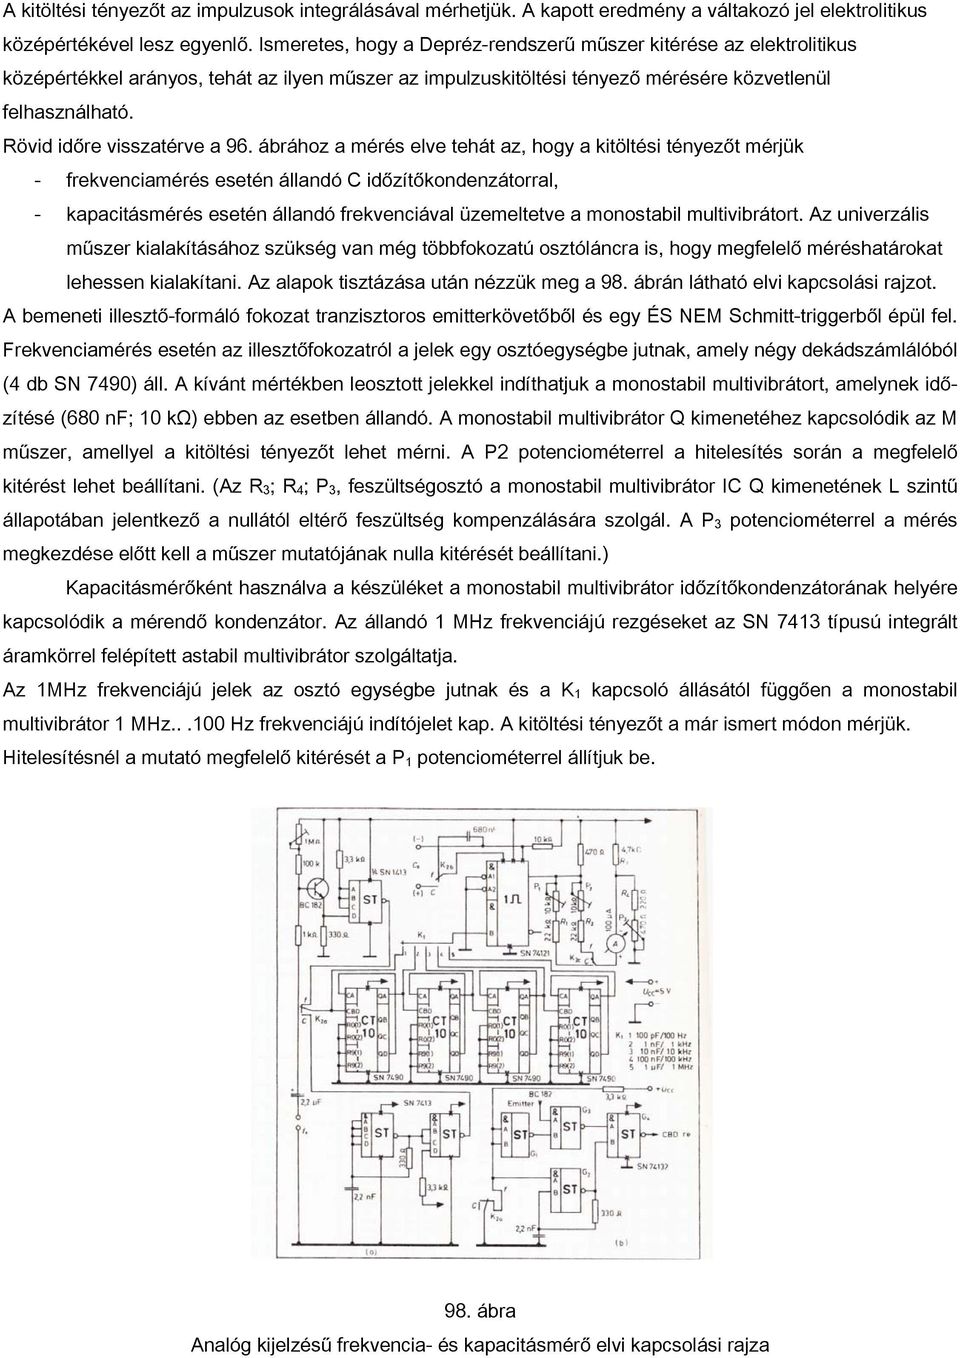 96. ábra Analóg kijelzésű frekvencia- és kapacitásmérő blokkvázlata - PDF  Ingyenes letöltés